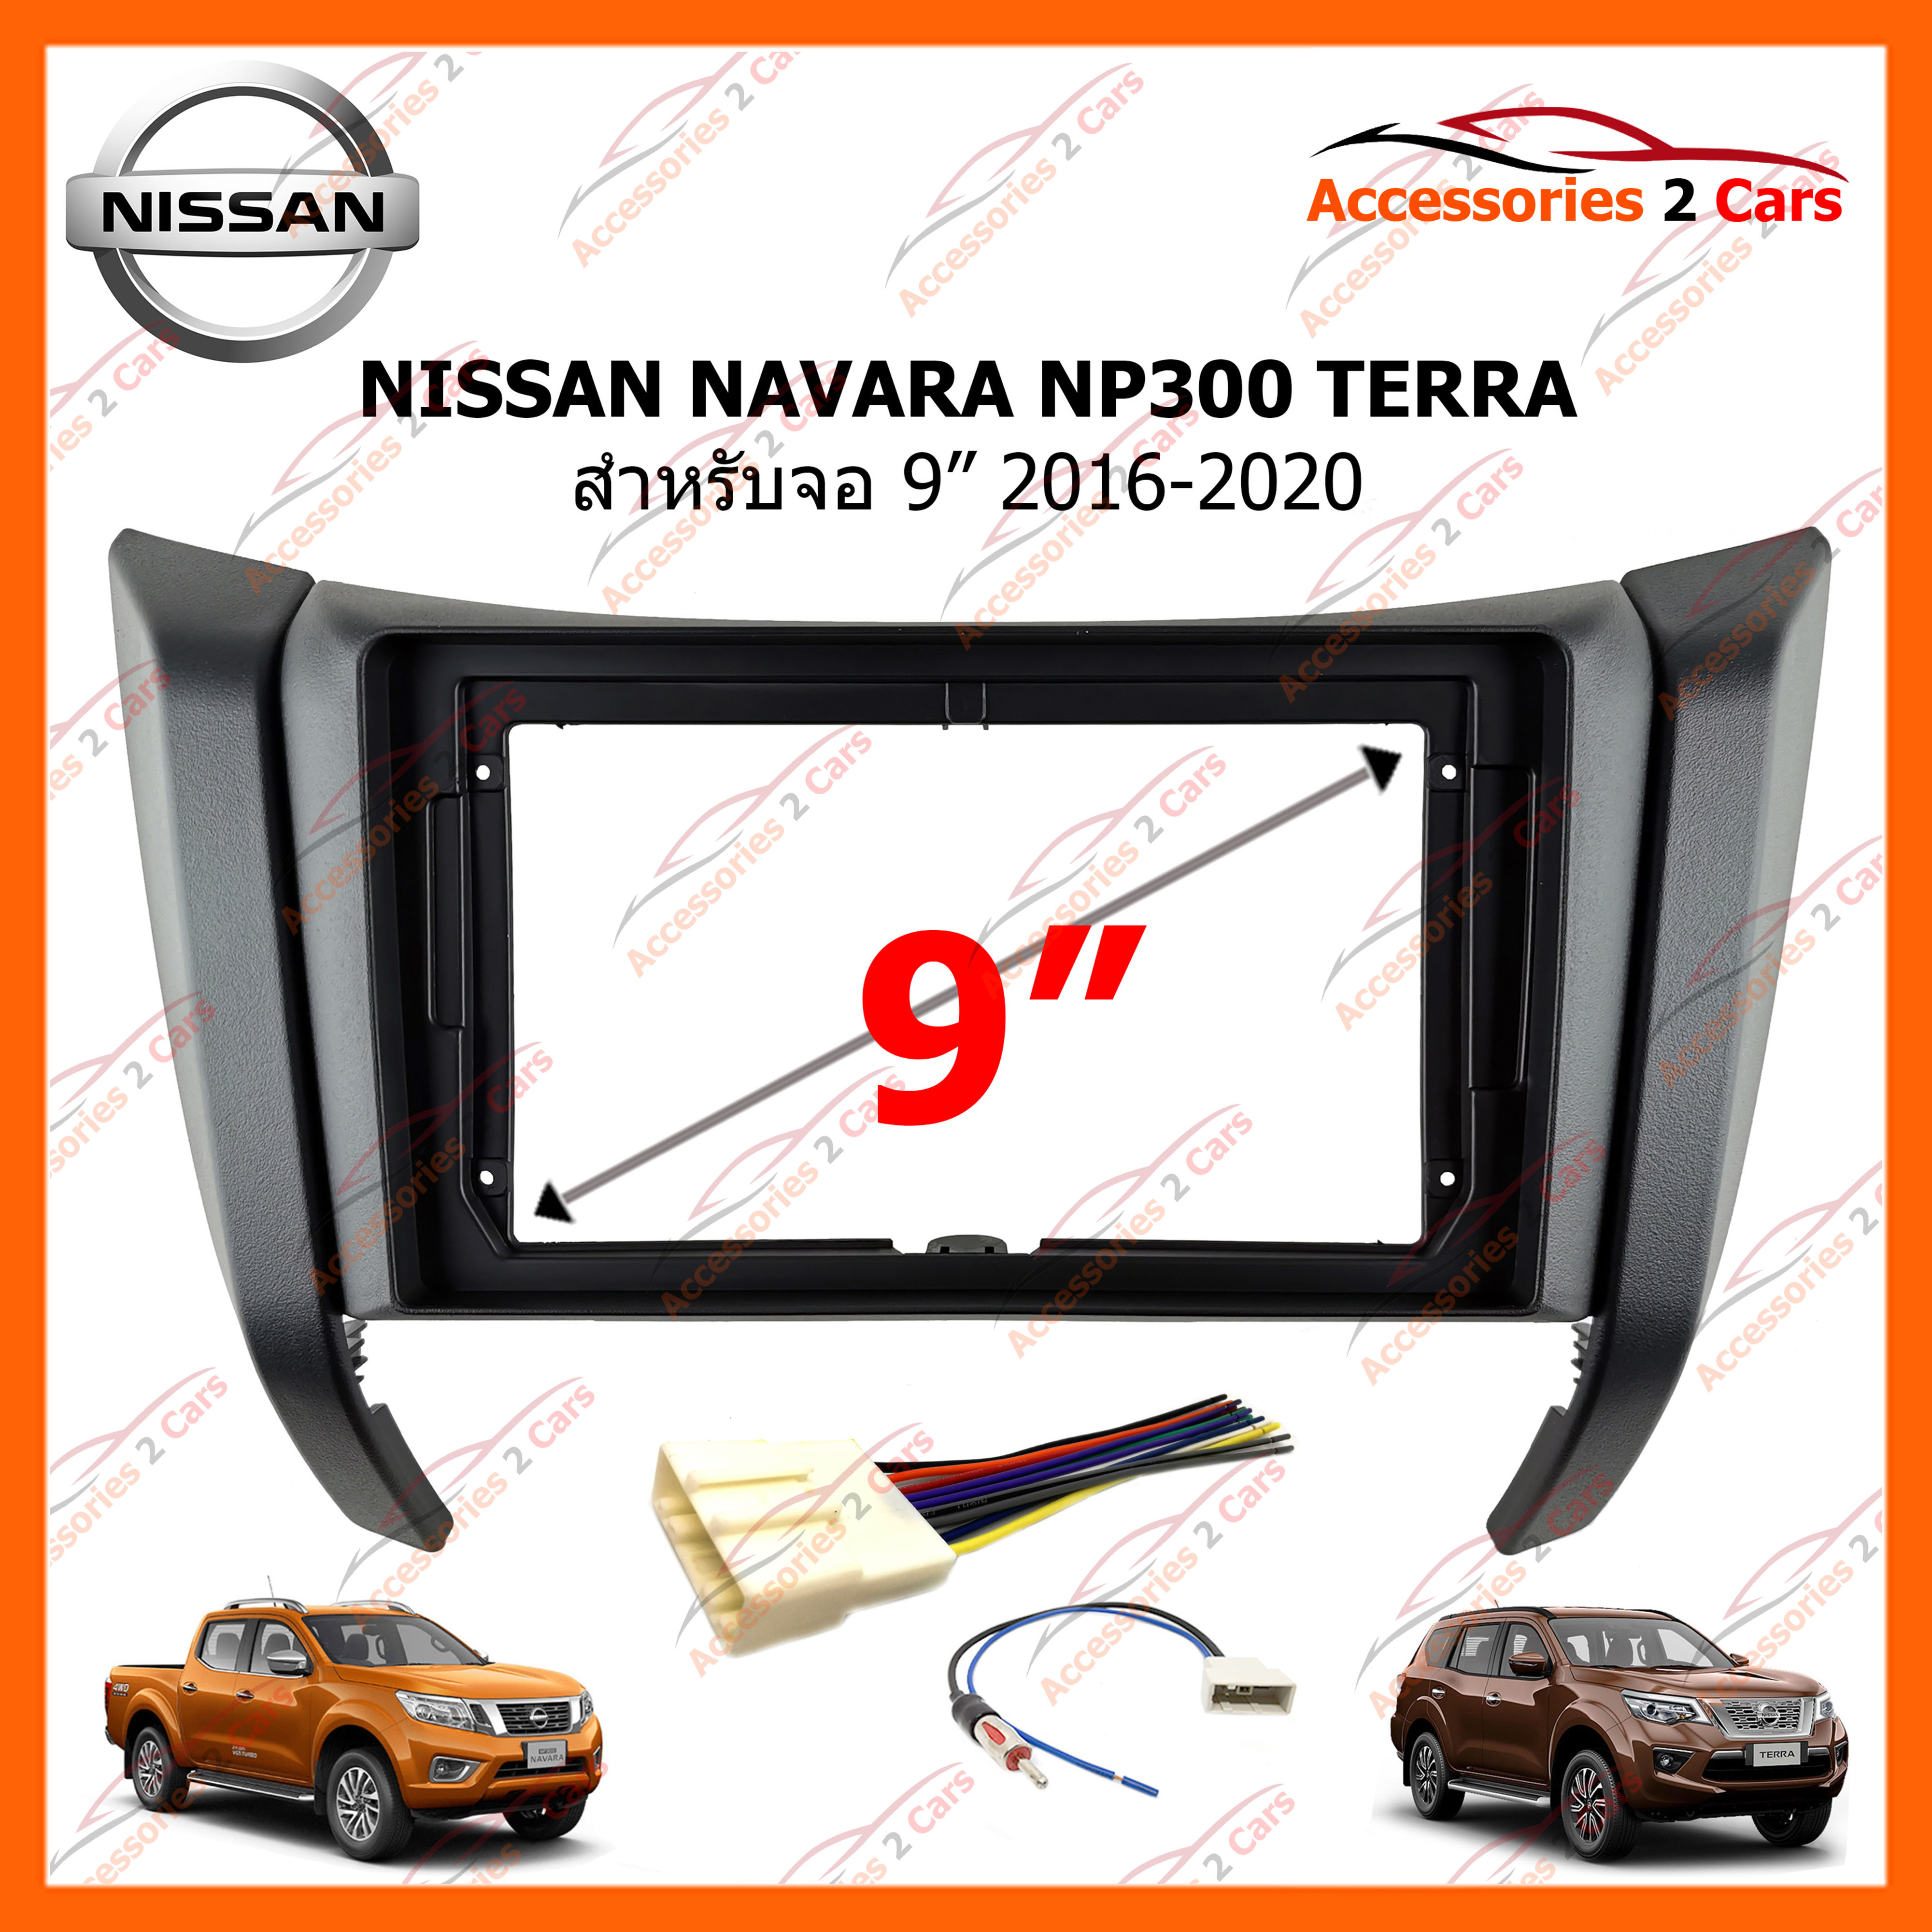 หน้ากากวิทยุรถยนต์ NISSAN NAVARA NP300 TERRA 2016-2020 สำหรับจอ 9 นิ้ว (NI-054N)